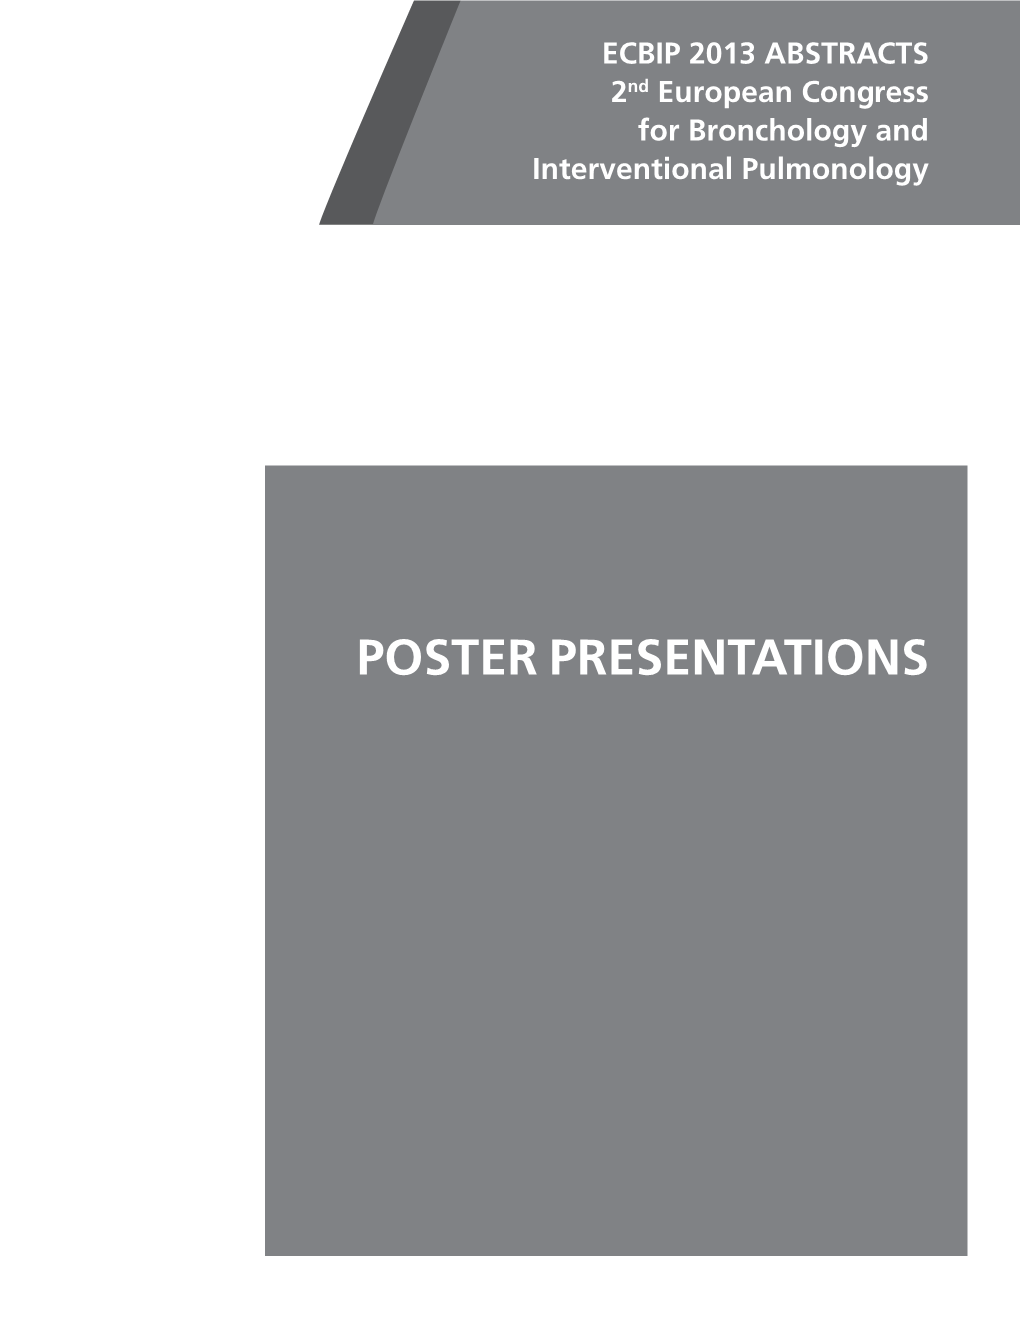 Poster Presentations Poster Presentations